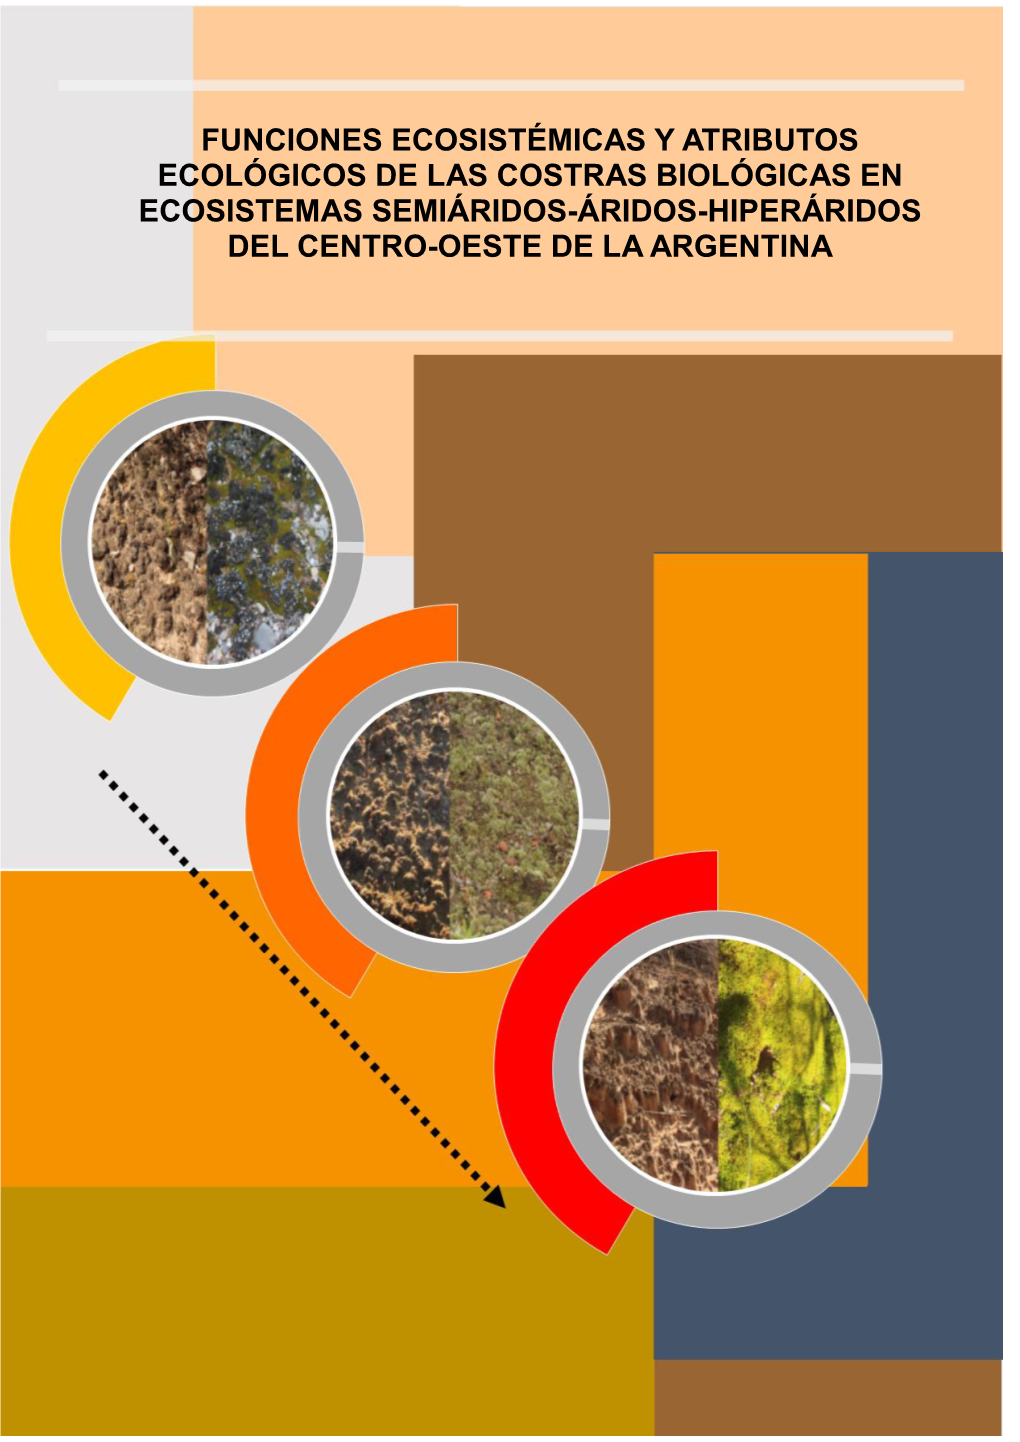 Funciones Ecosistémicas Y Atributos Ecológicos De Las Costras Biológicas En Ecosistemas Semiáridos-Áridos-Hiperáridos Del Centro-Oeste De La Argentina